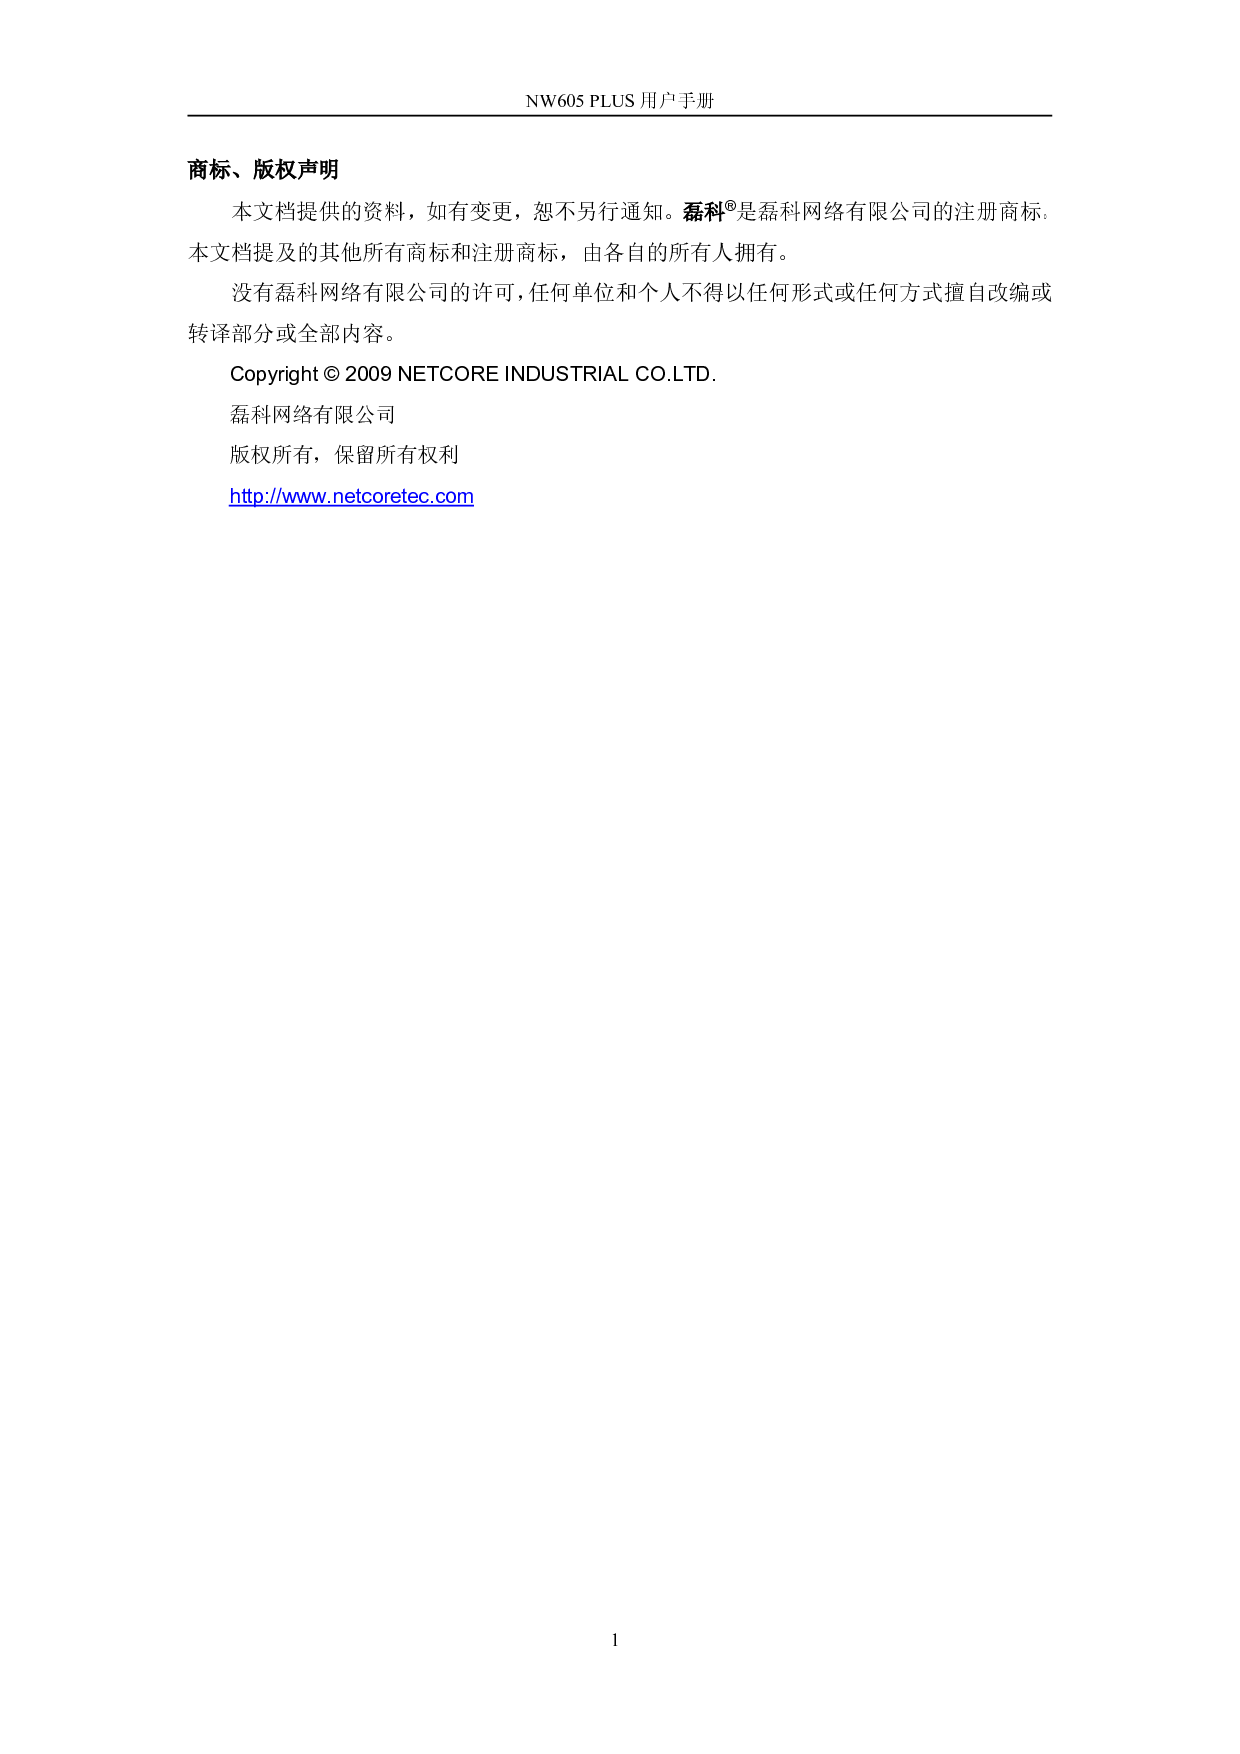 磊科 Netcore NW605P 用户手册 第1页